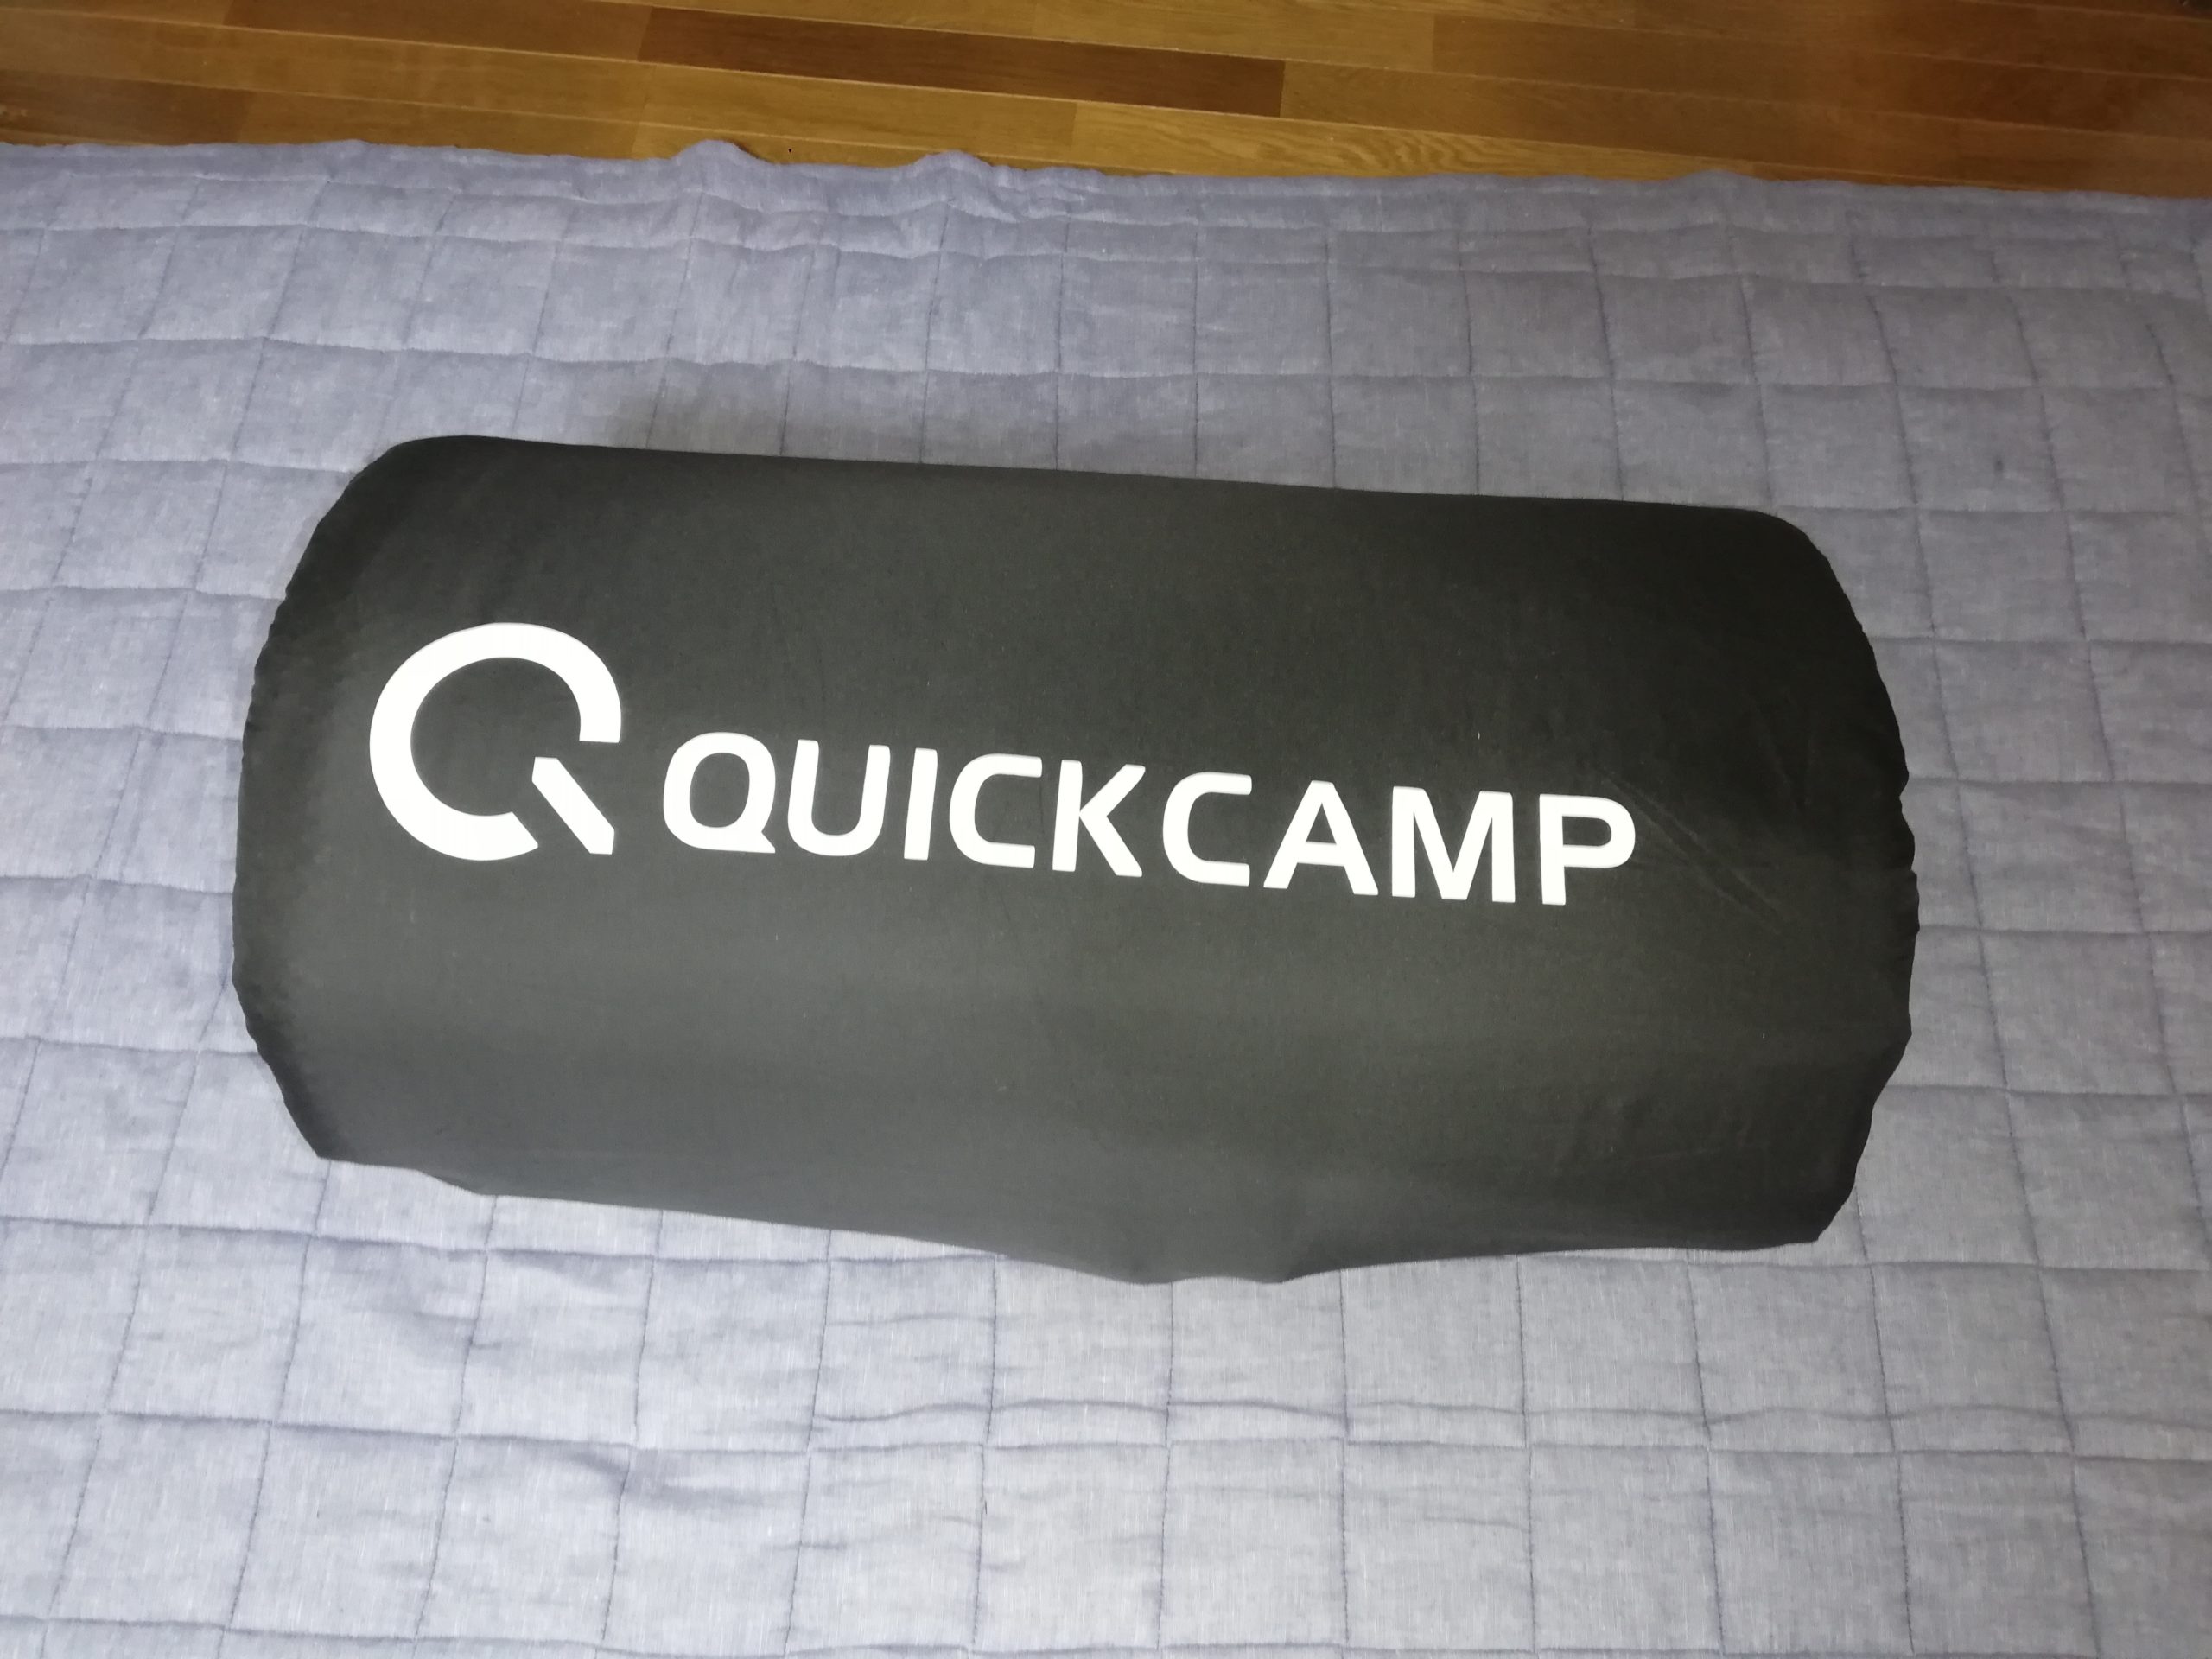 QUICKCAMP（クイックキャンプ）インフレータマット | 家族でキャンプへ 